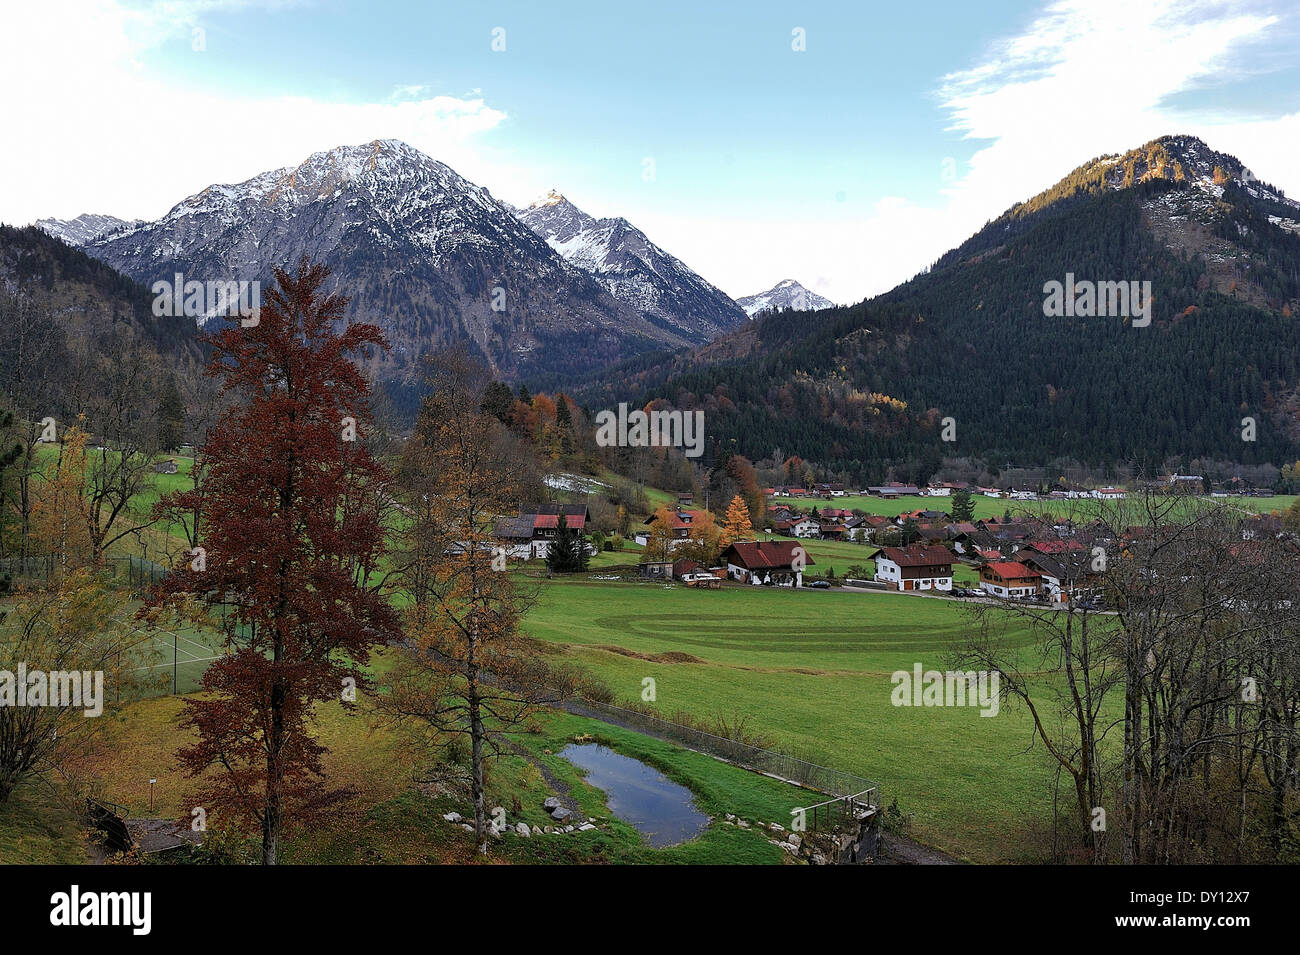 Un bavarien village dans les mines, la neige sur les collines, ein bayerisches Dorf in den Alpen Banque D'Images